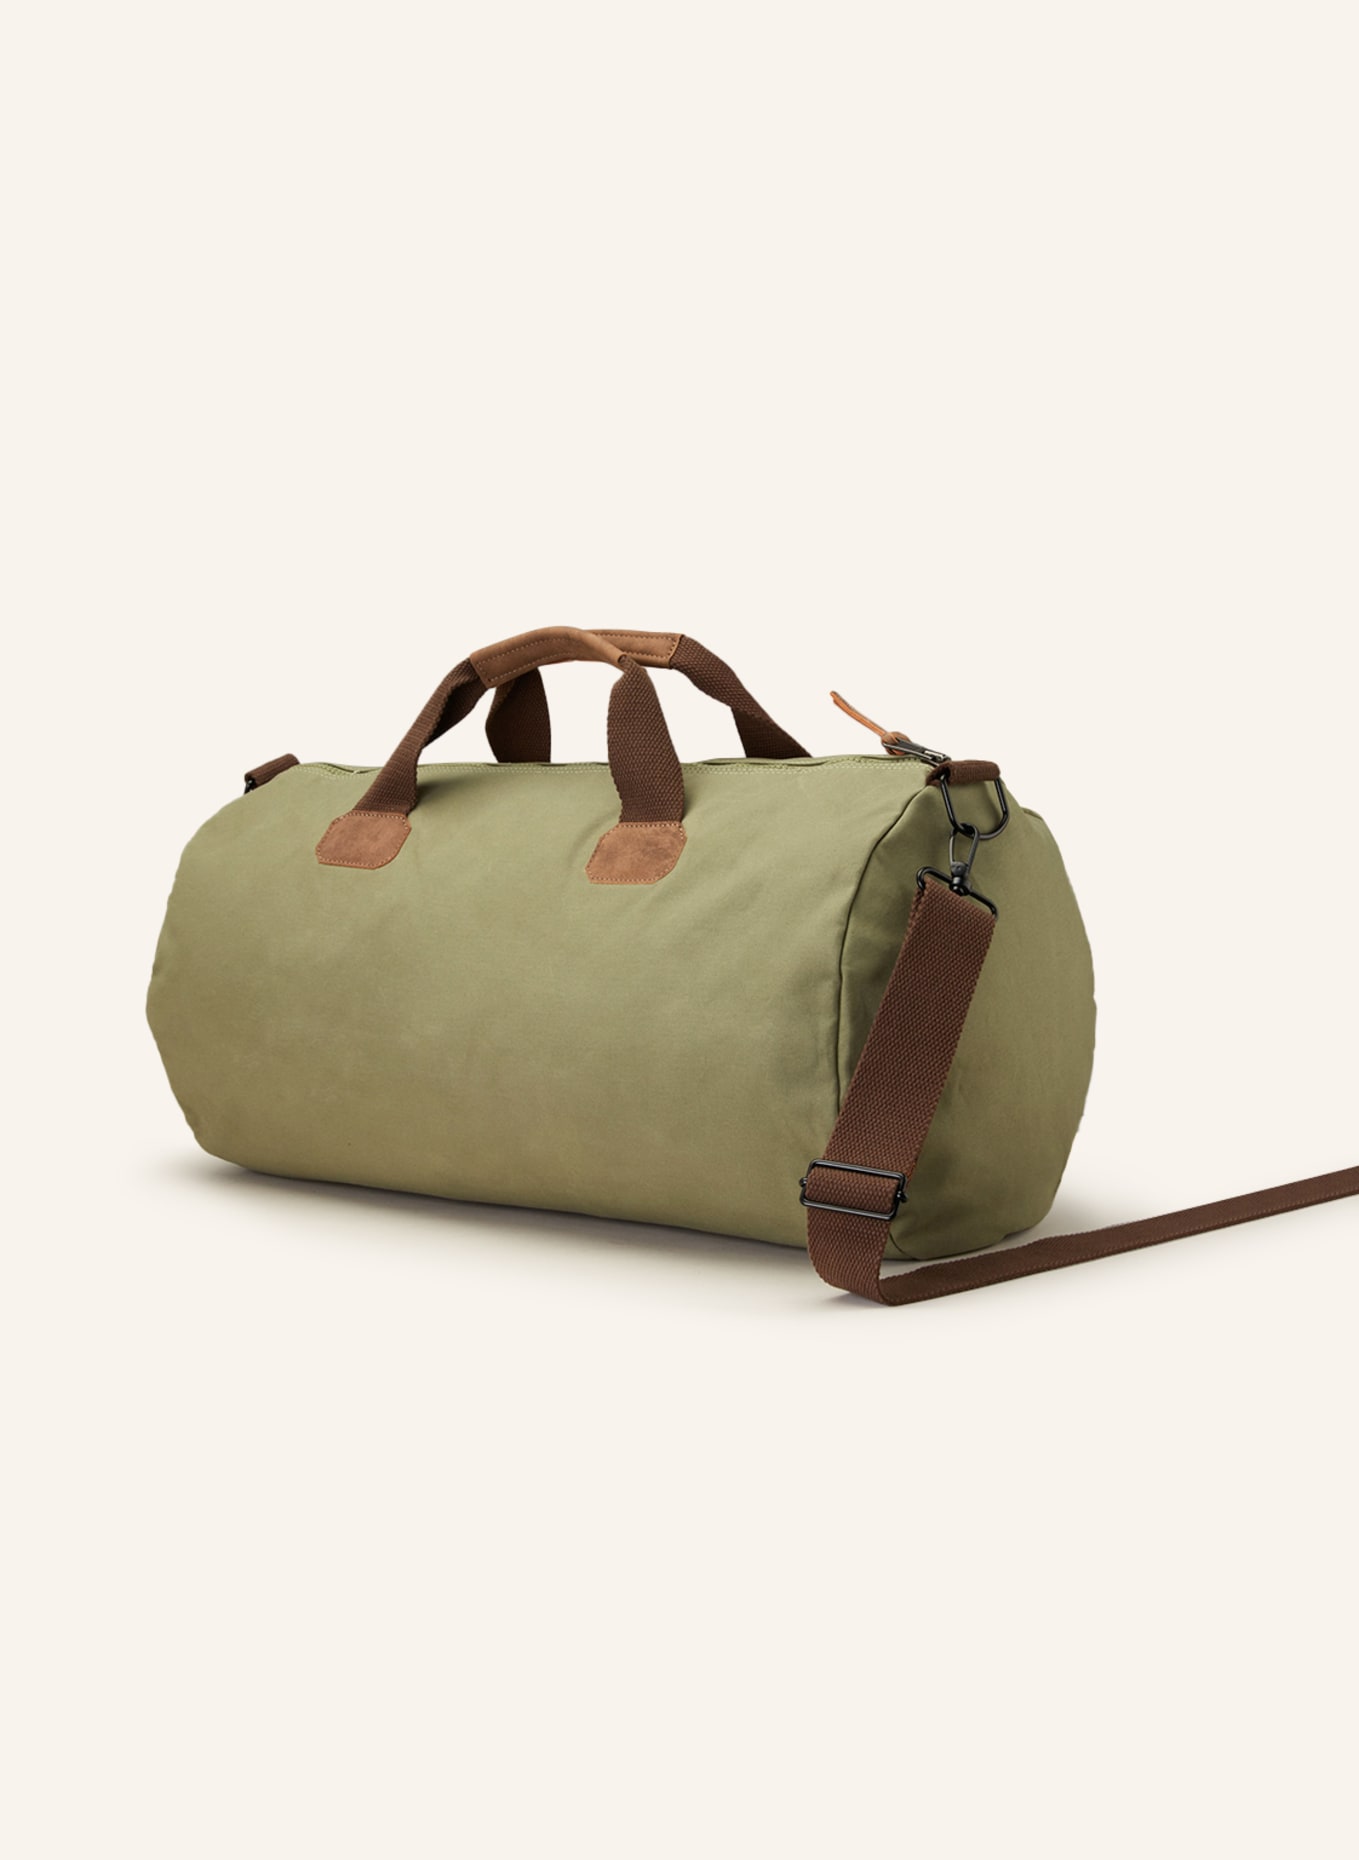 NAPAPIJRI Travel bag BERING 3, Color: OLIVE (Image 2)